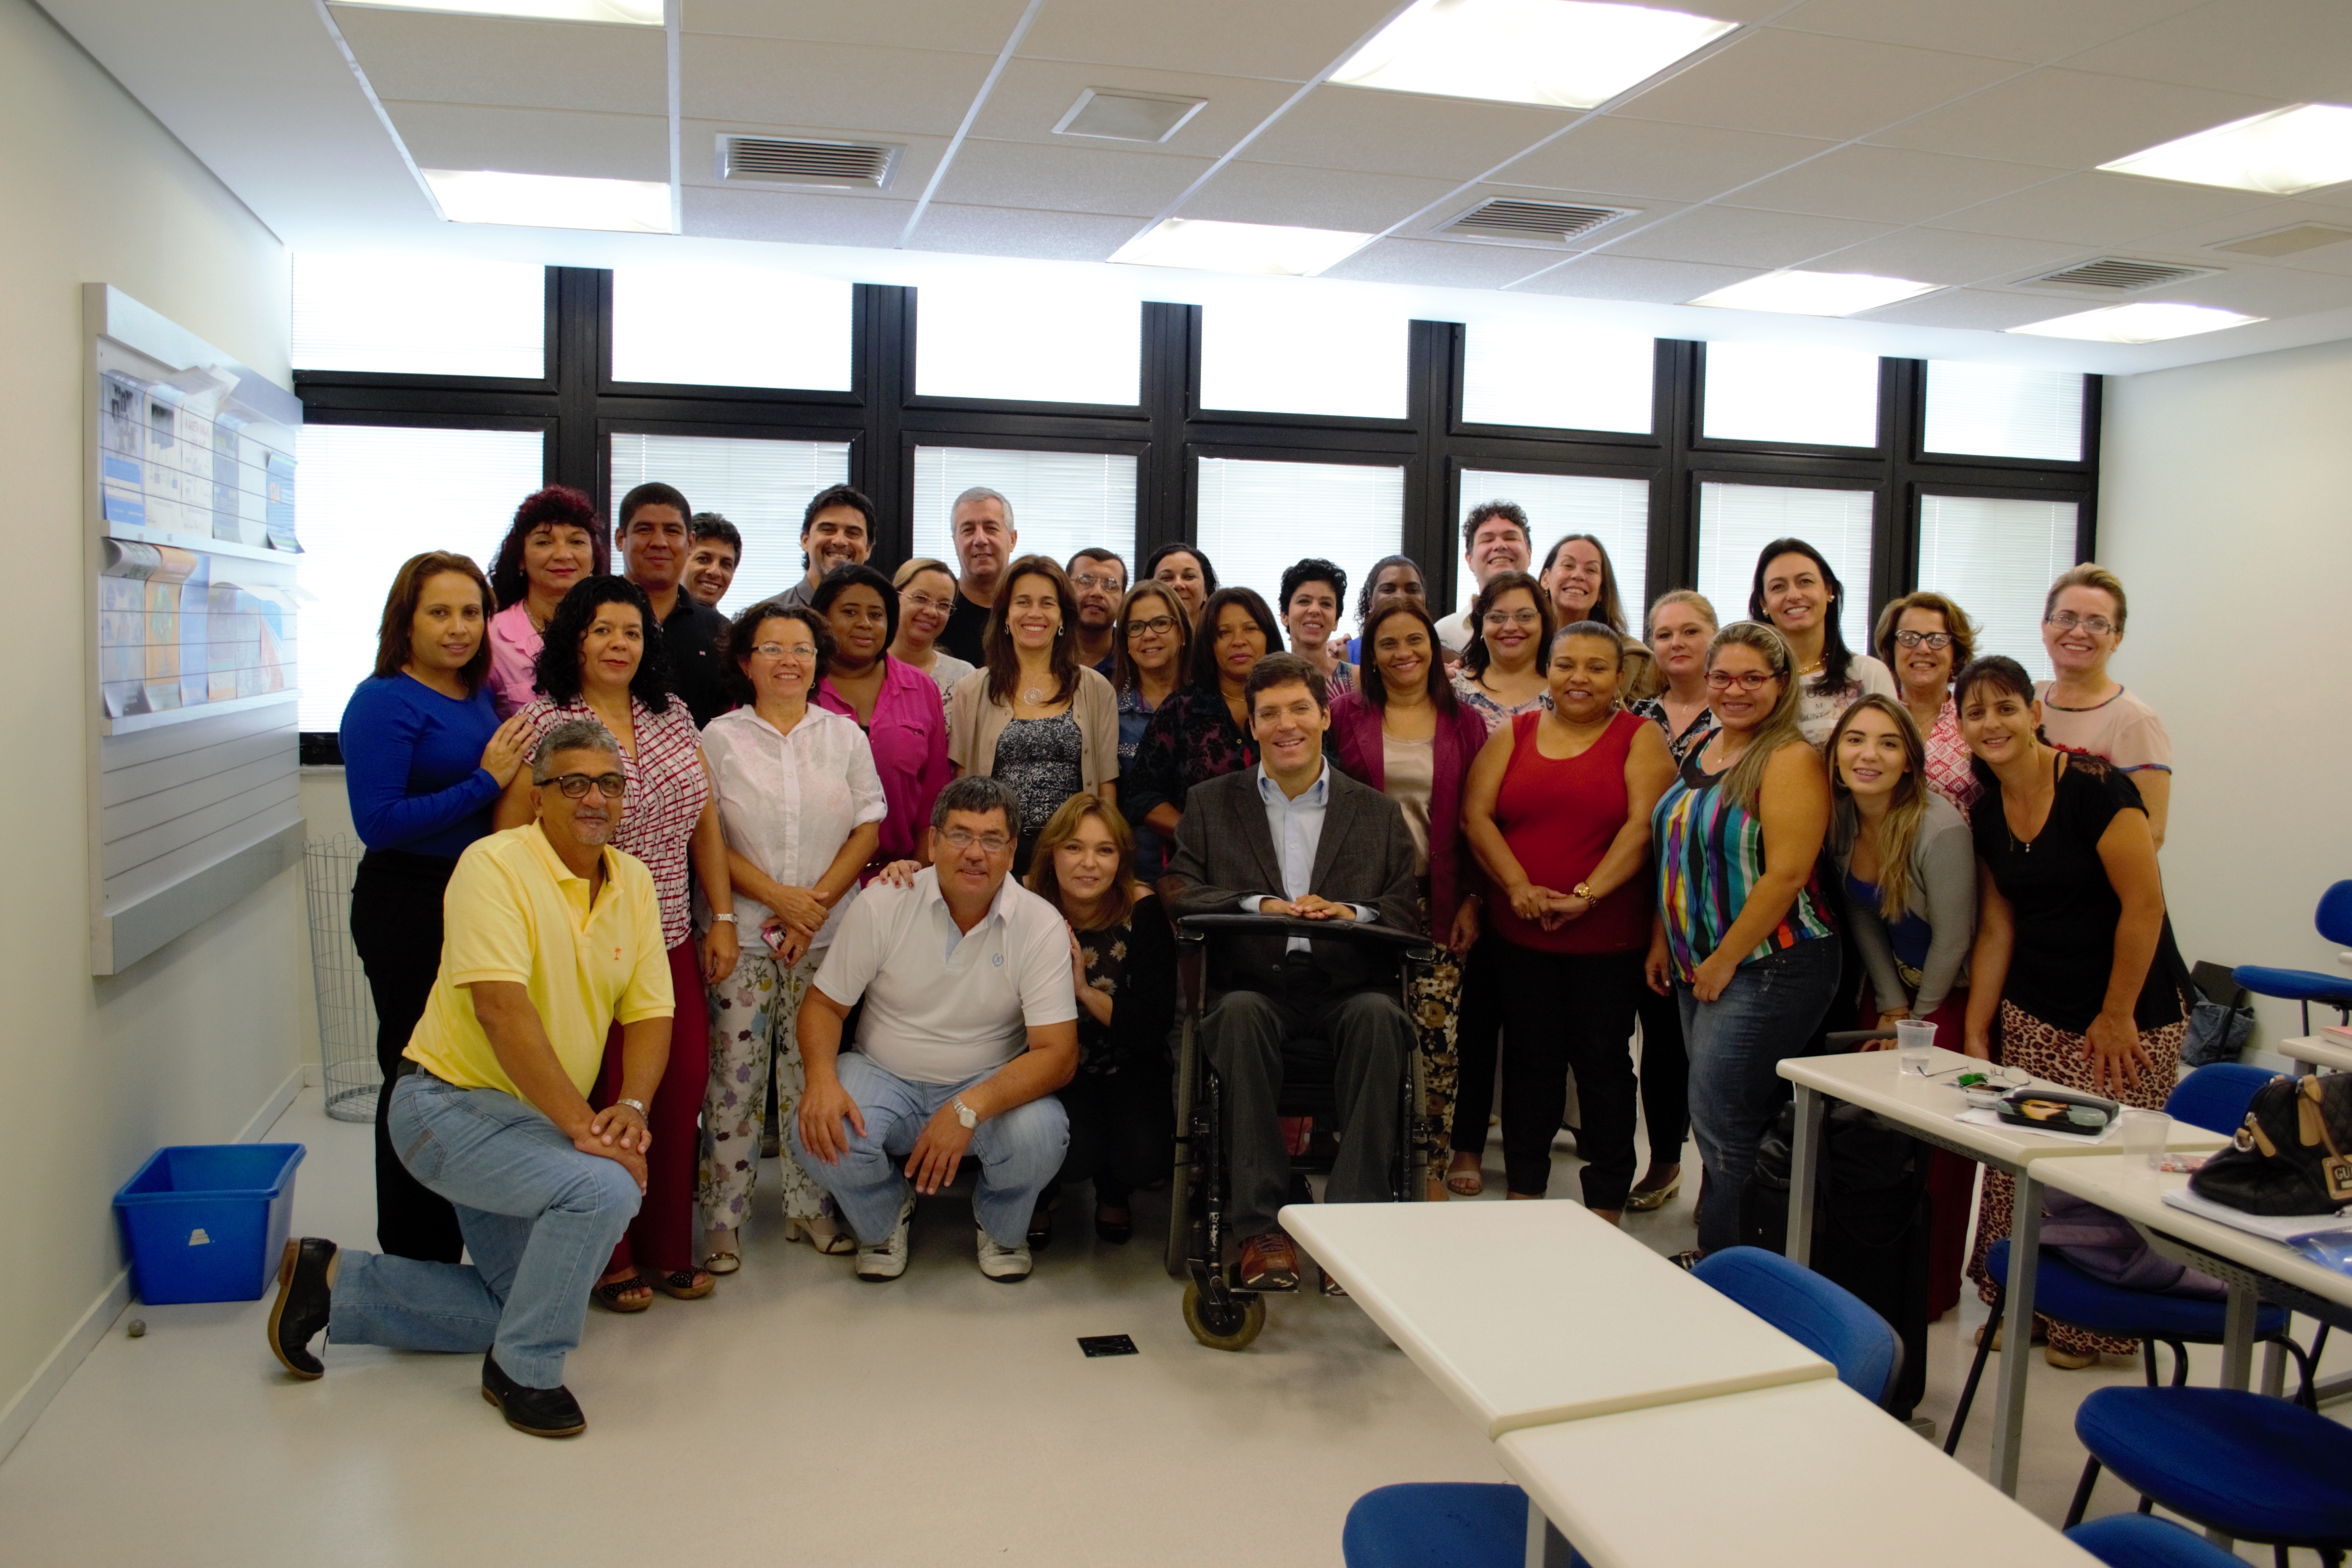 Homens e mulheres posam para a foto agrupados próximos ao Rodrigo, que está no centro do grupo, em cadeira de rodas. Ao fundo, as janelas da sala de aula.